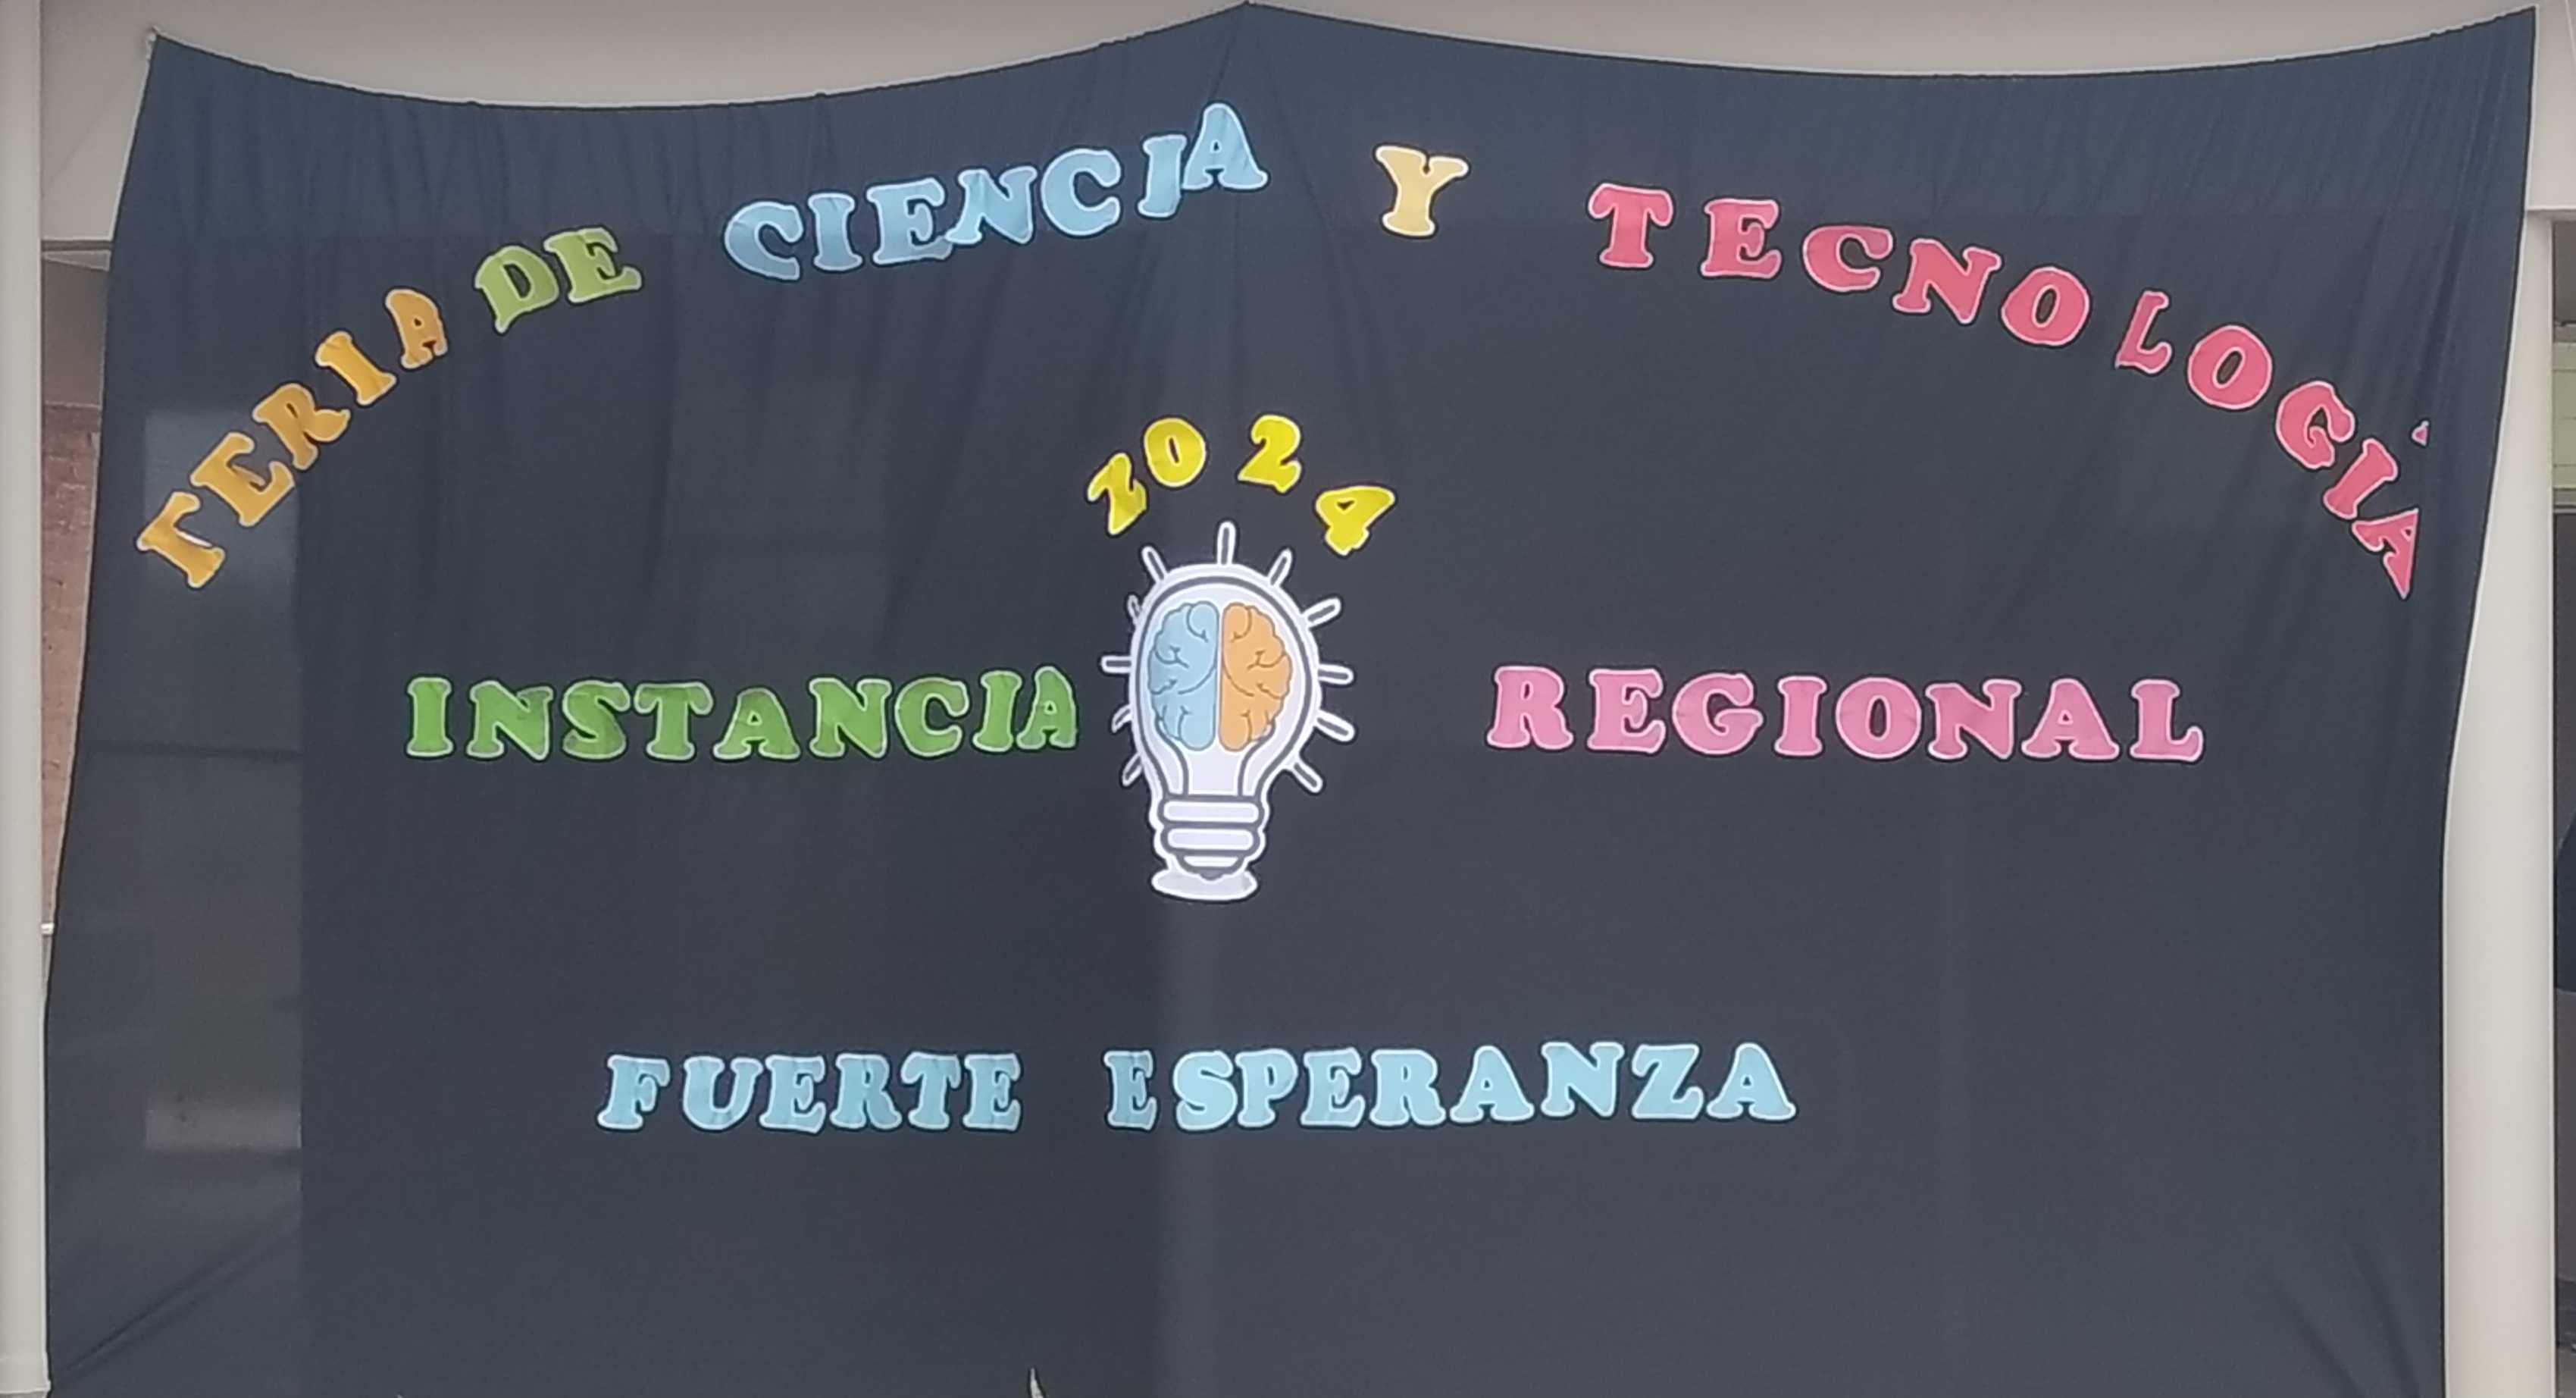 ¡Fuerte Esperanza brilla en la Feria Regional de Ciencias!